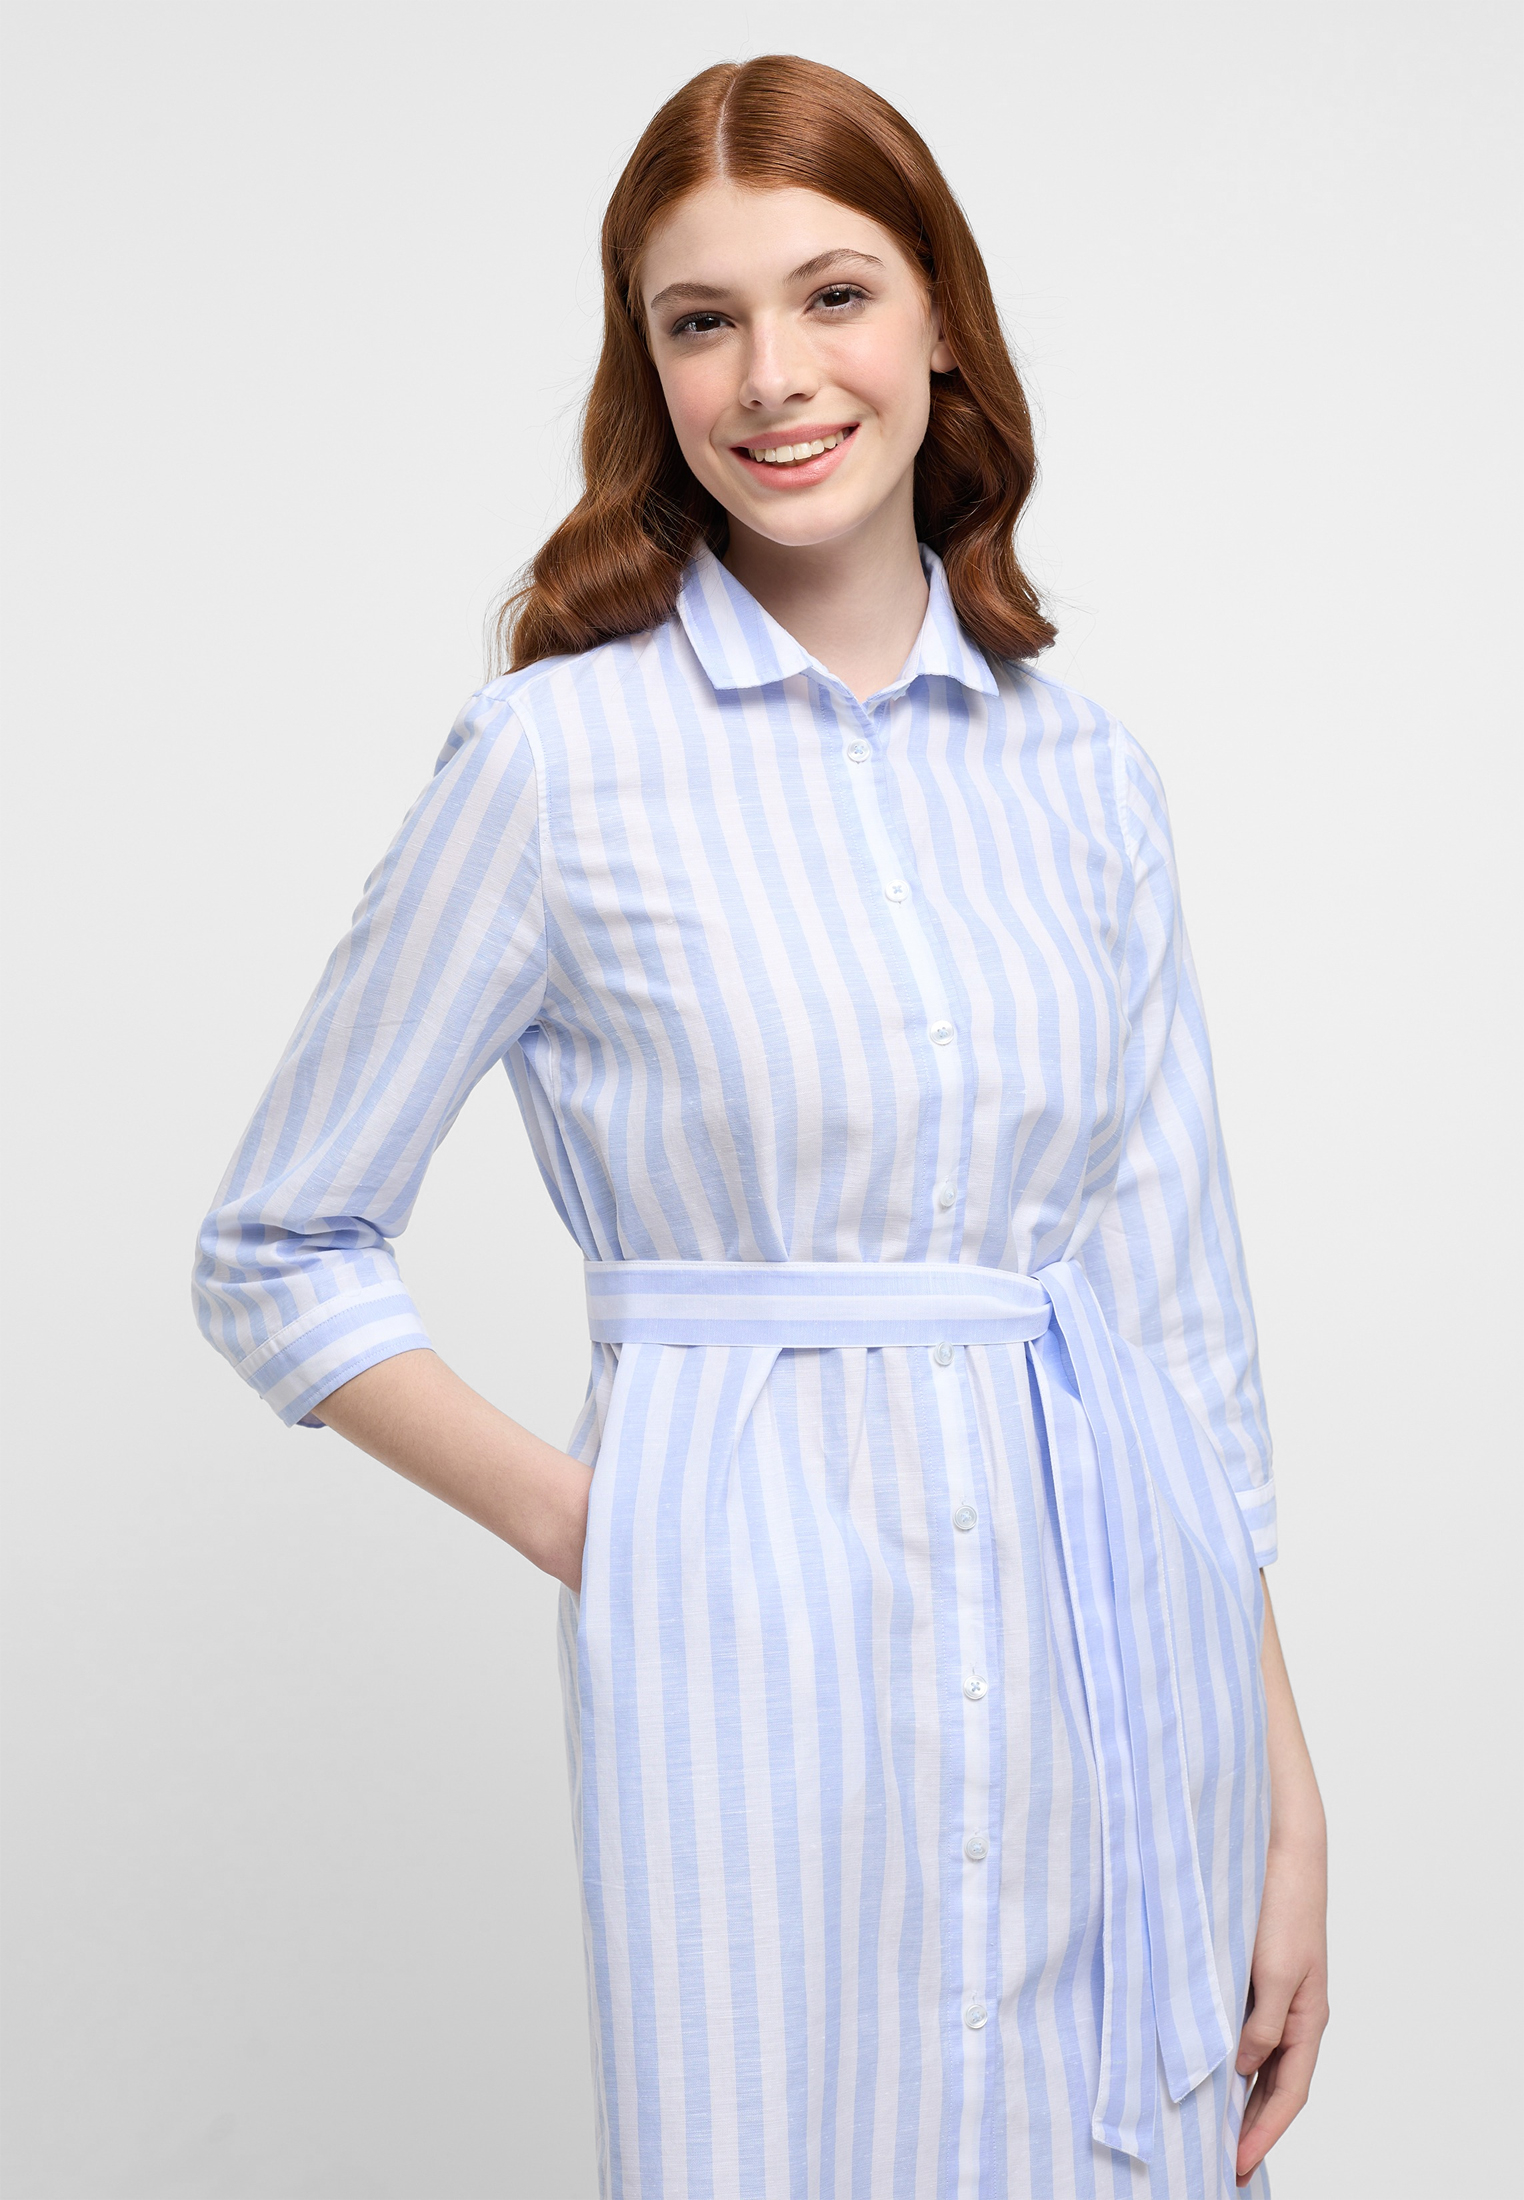 Hemdblusenkleid in blue striped light 2DR00267-01-11-46-3/4 blue 46 | 3/4 light sleeves | | 